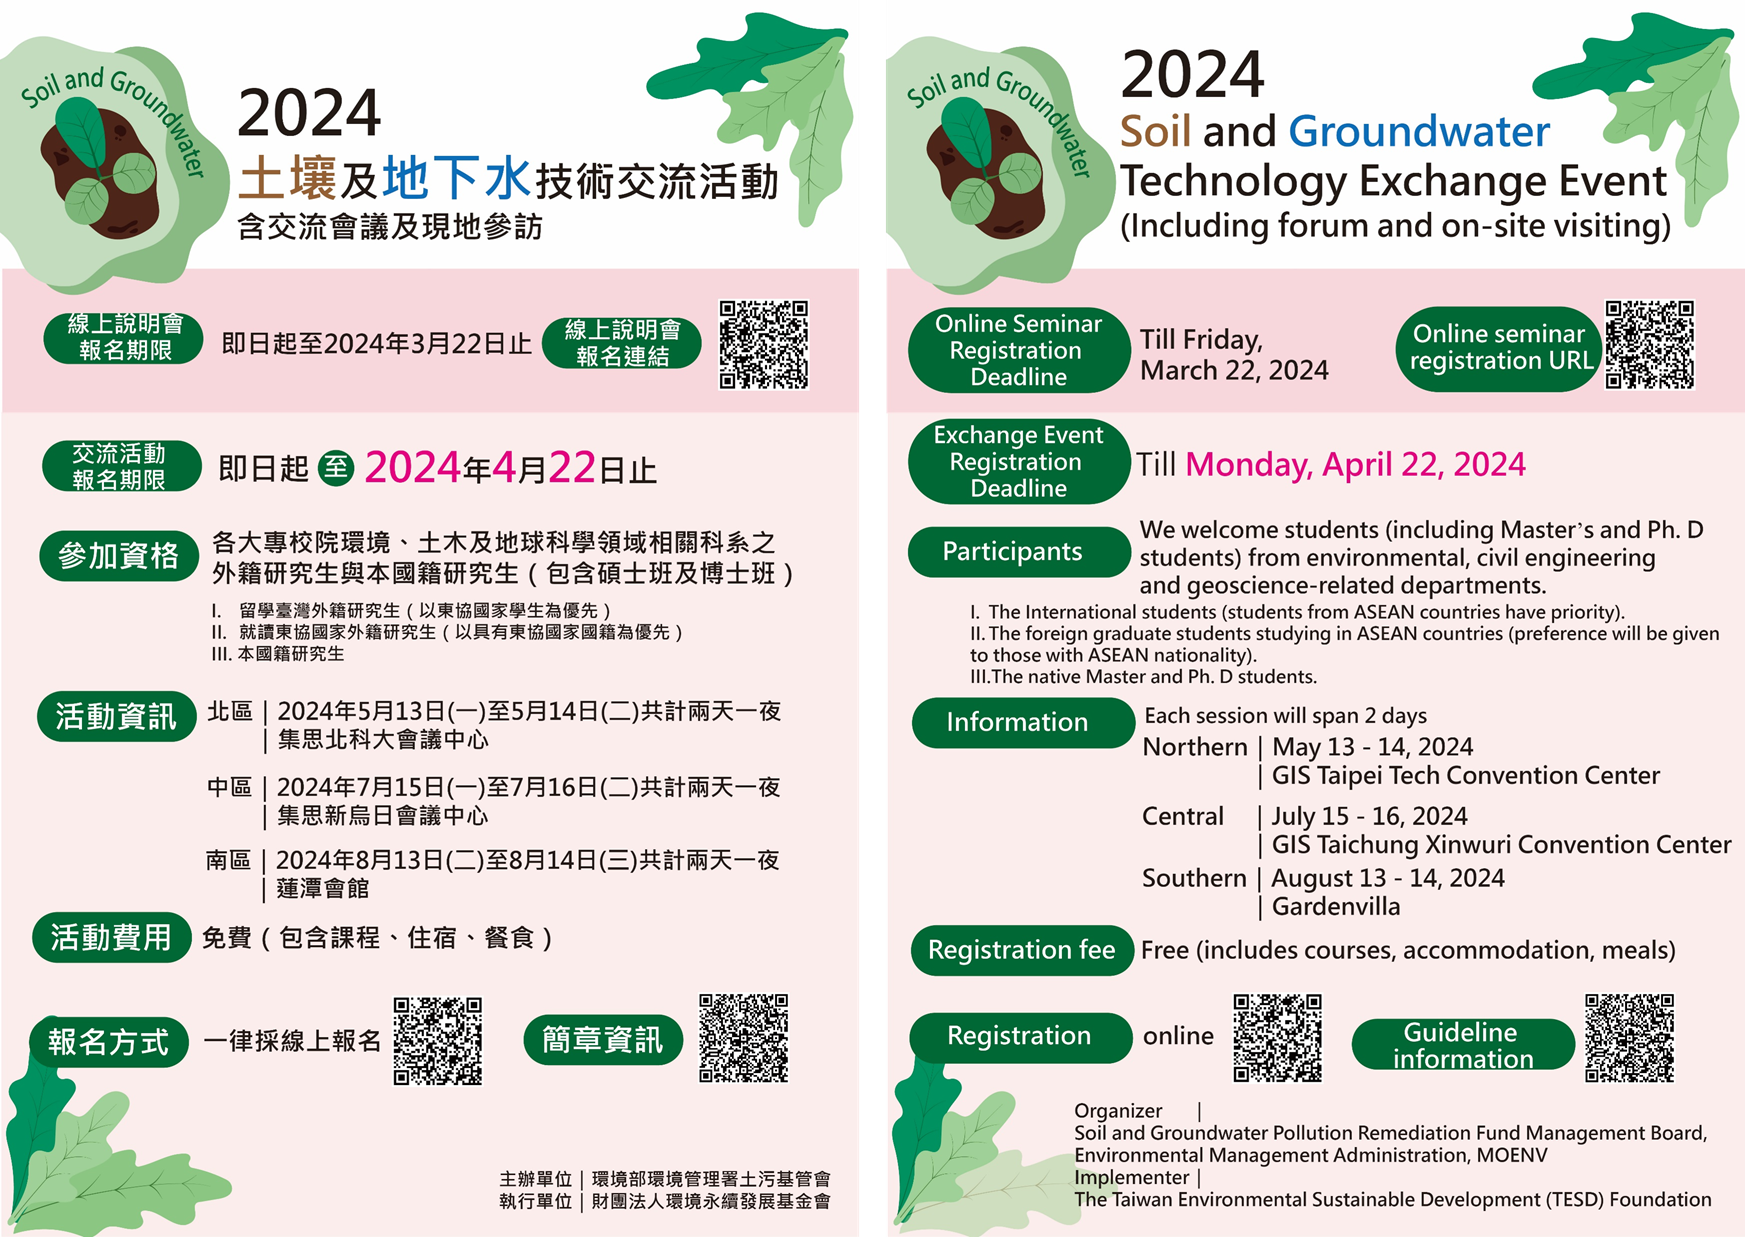 「2024年土壤及地下水技術交流活動」海報(中英文)